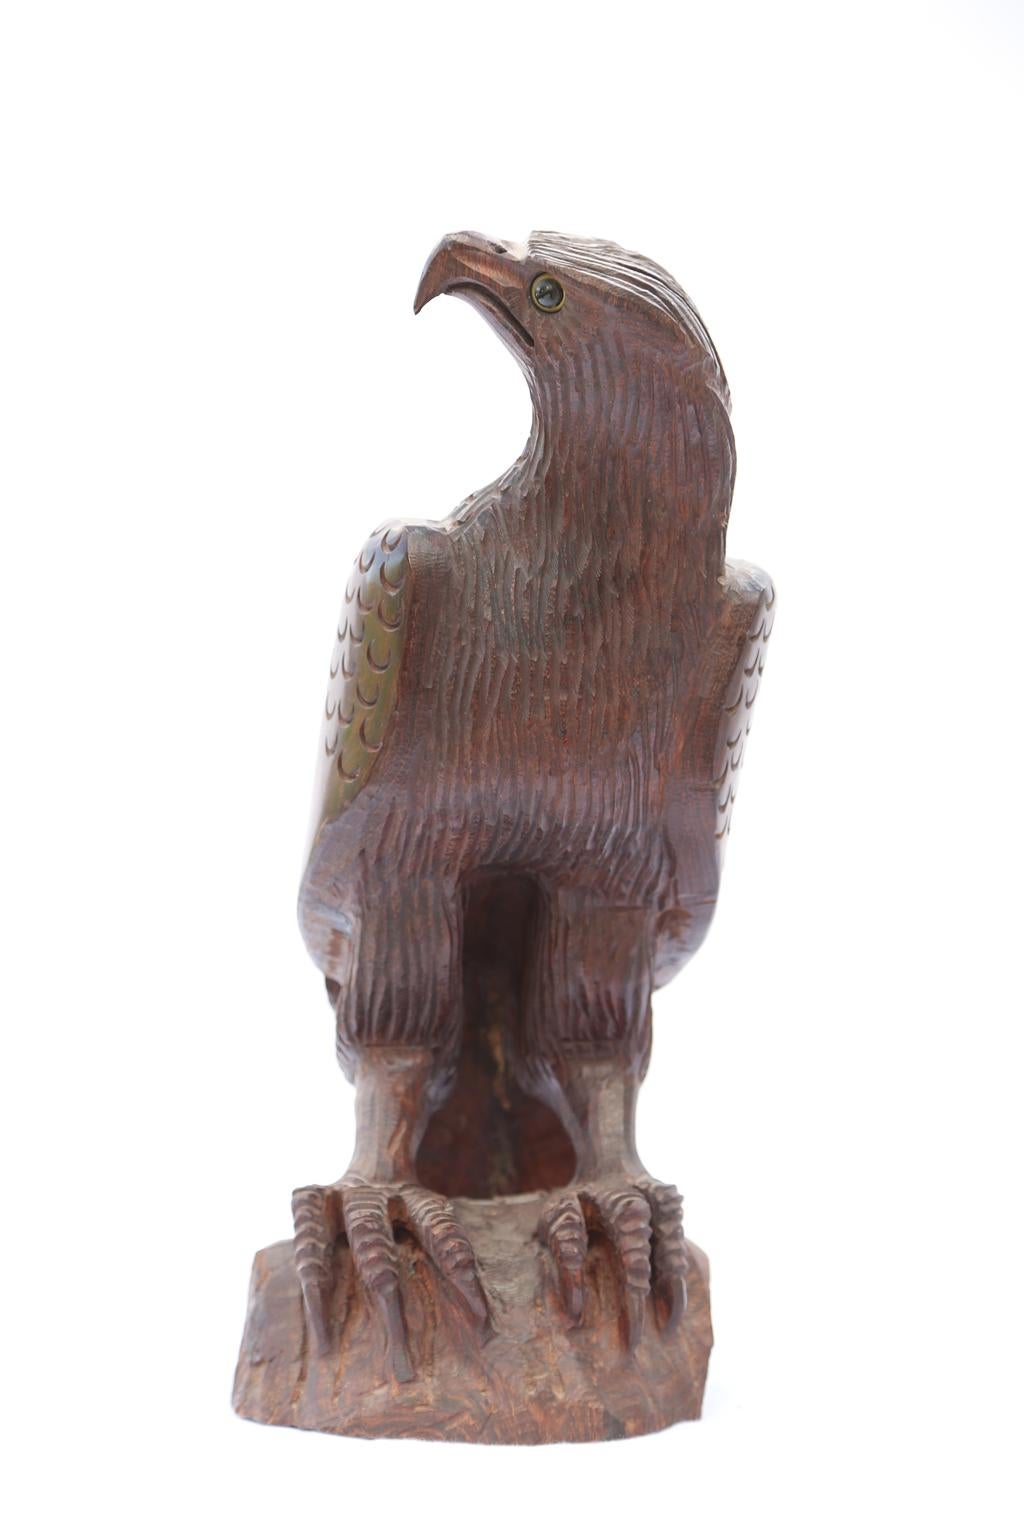 Aigle sculpté à la main, en bois de rose, perché sur un rocher, avec des yeux en verre. Oiseau de proie très stylisé avec un bec et une tête anguleux exagérés et de grandes serres. 

Stock ID : 1902.